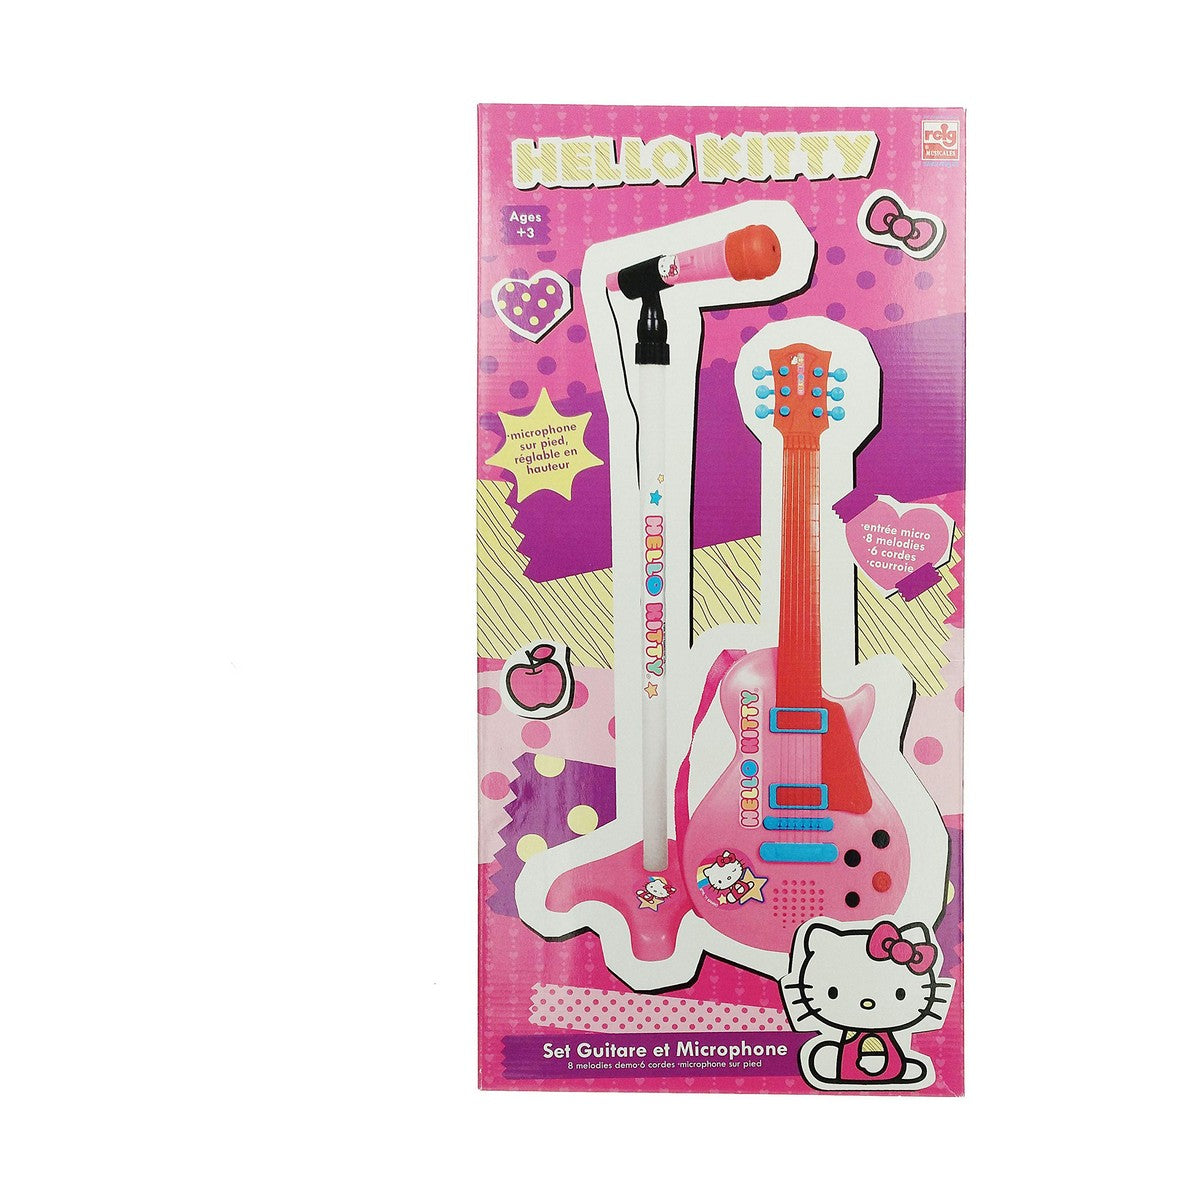 Musikset Hello Kitty Rosa-Leksaker och spel, Barns Musikinstrument-Hello Kitty-peaceofhome.se